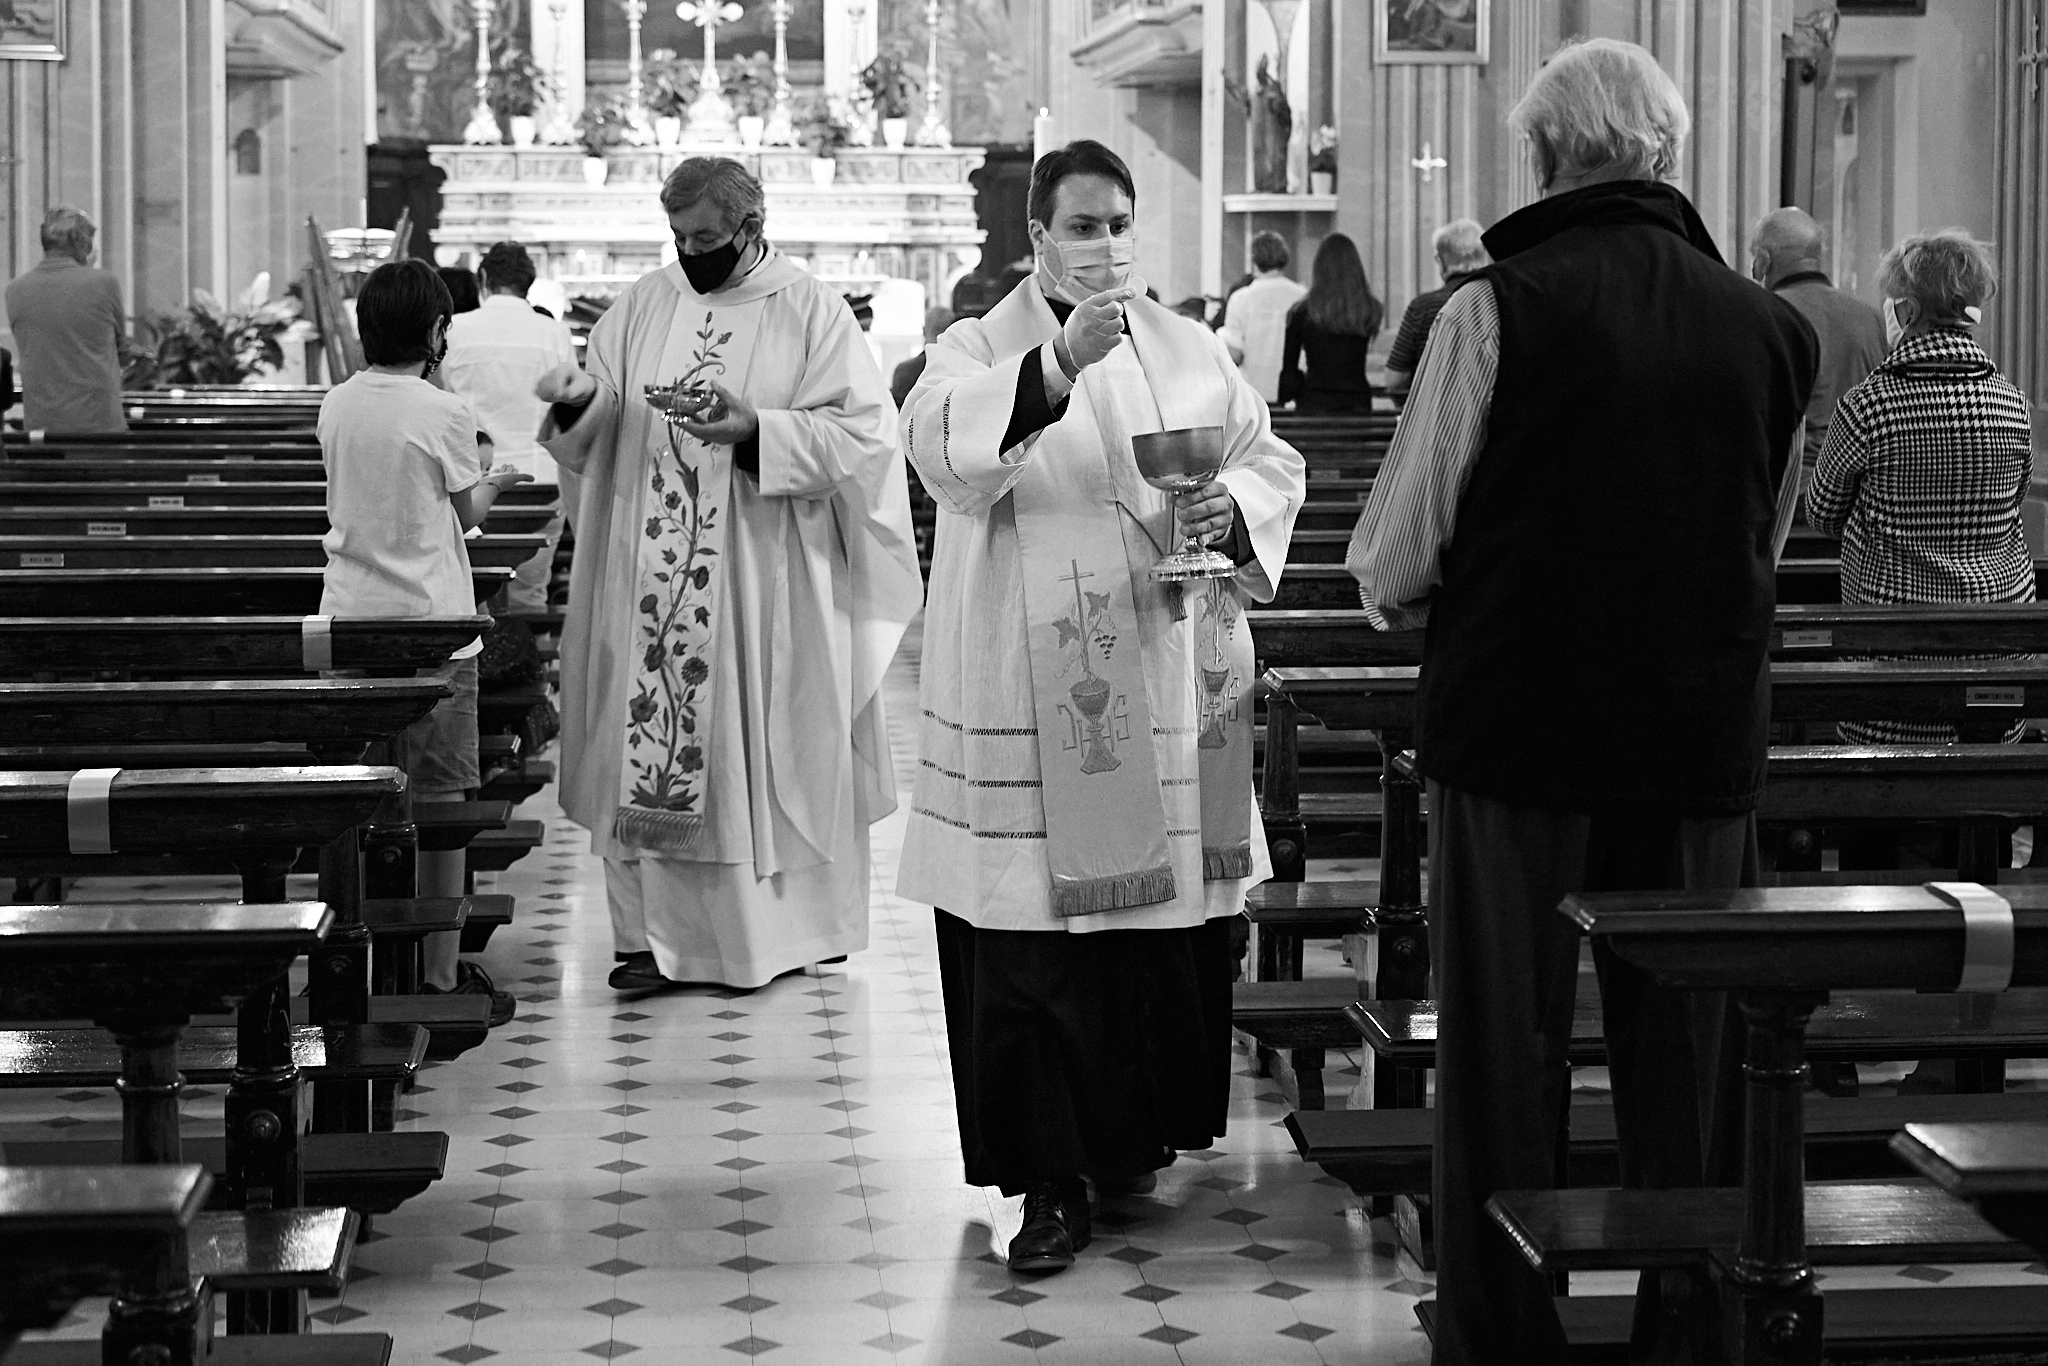 La messa ai tempi del Covid - Fotografie di Massimiliano Ferrari